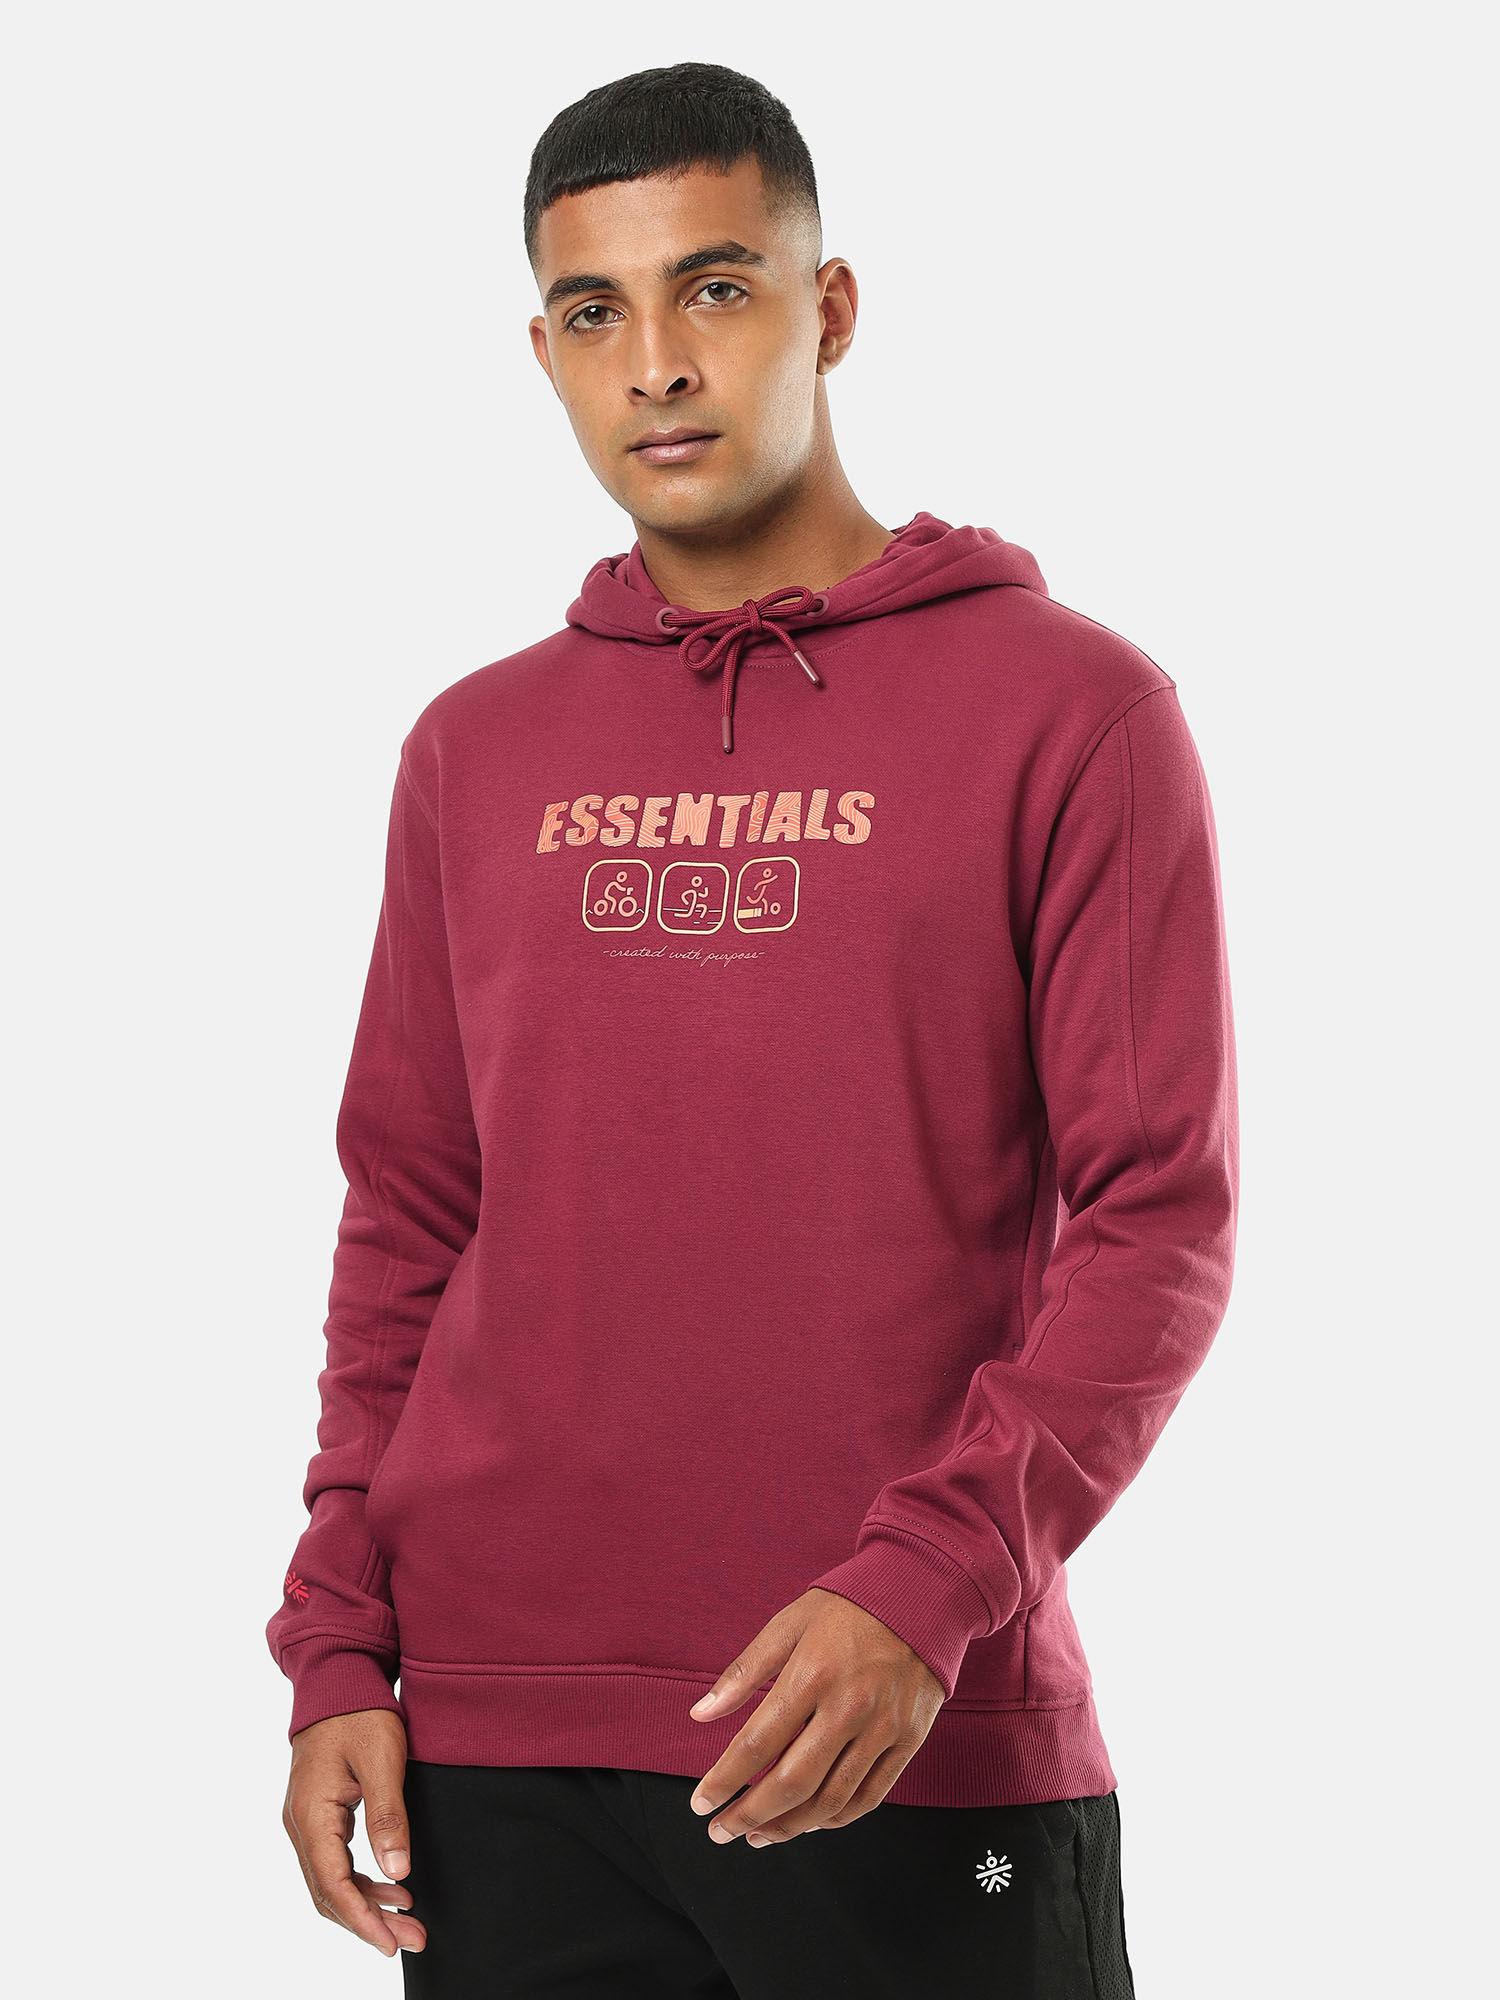 mens-maroon-printed-hoodie-with-slit-pockets